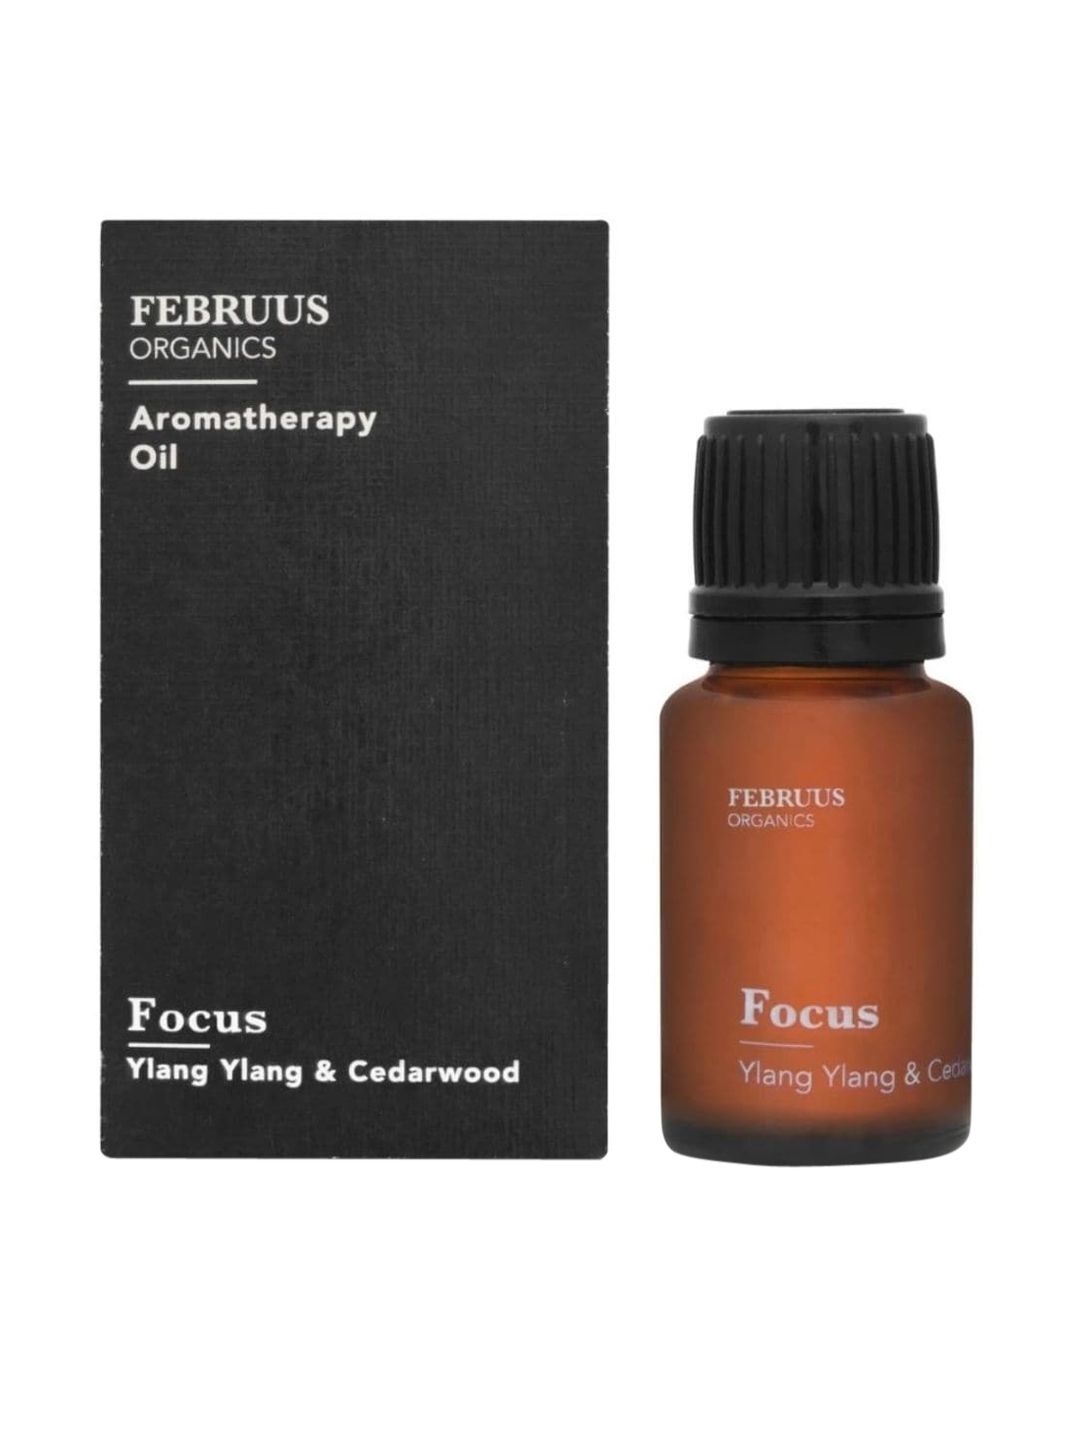 Februus Organics Black Aroma Oil - Focus Price in India